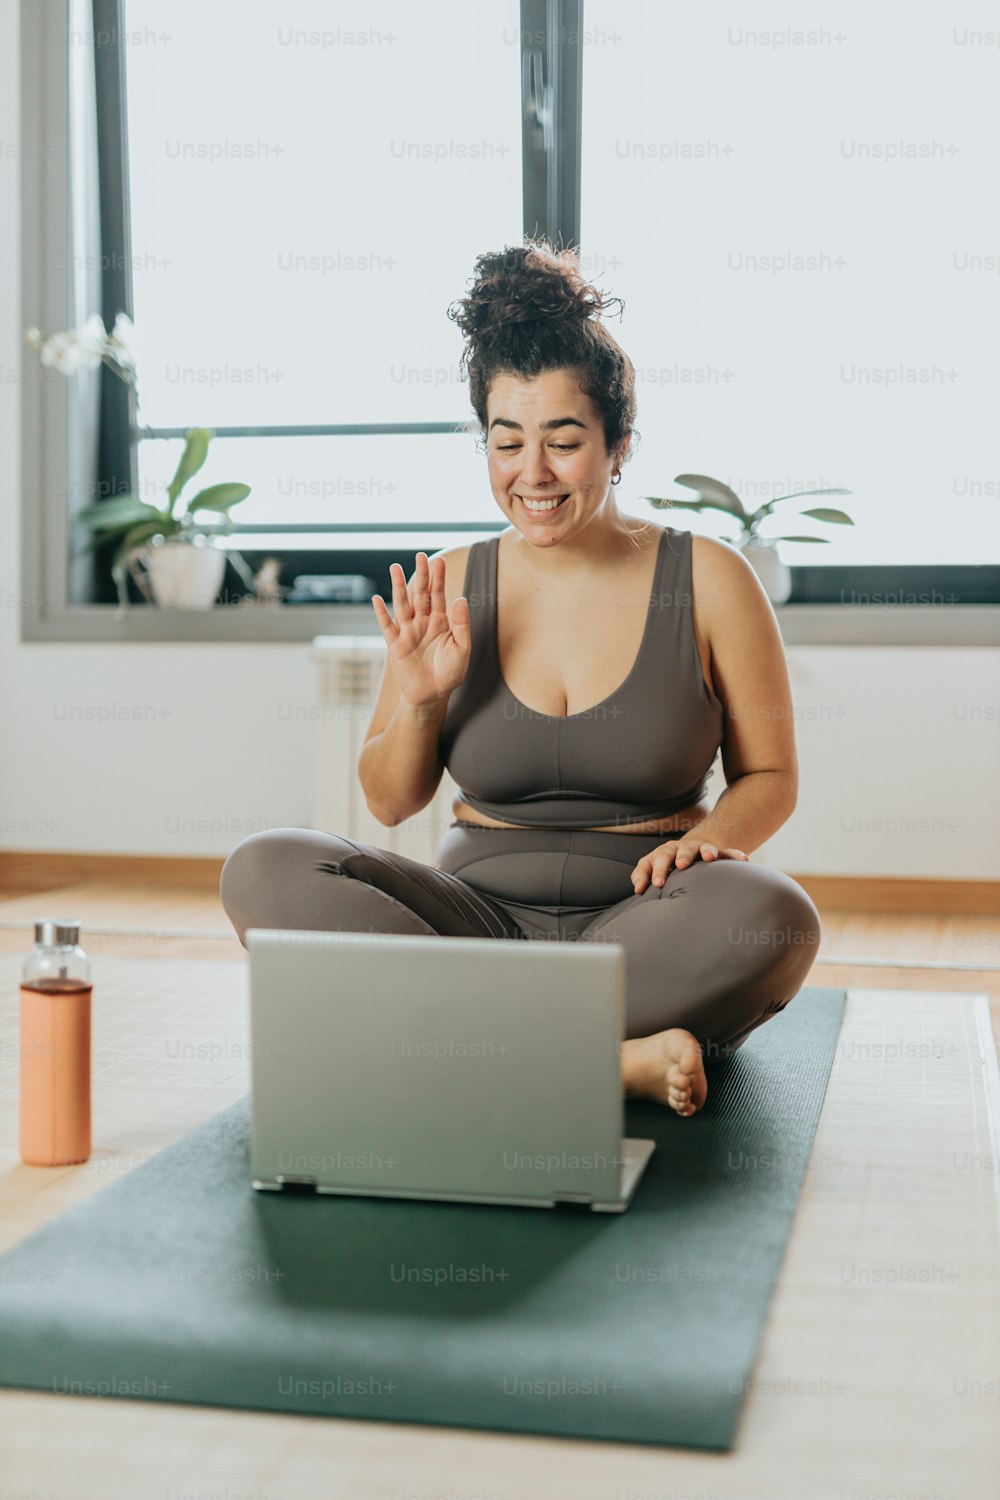 Une femme assise sur un tapis de yoga devant un ordinateur portable